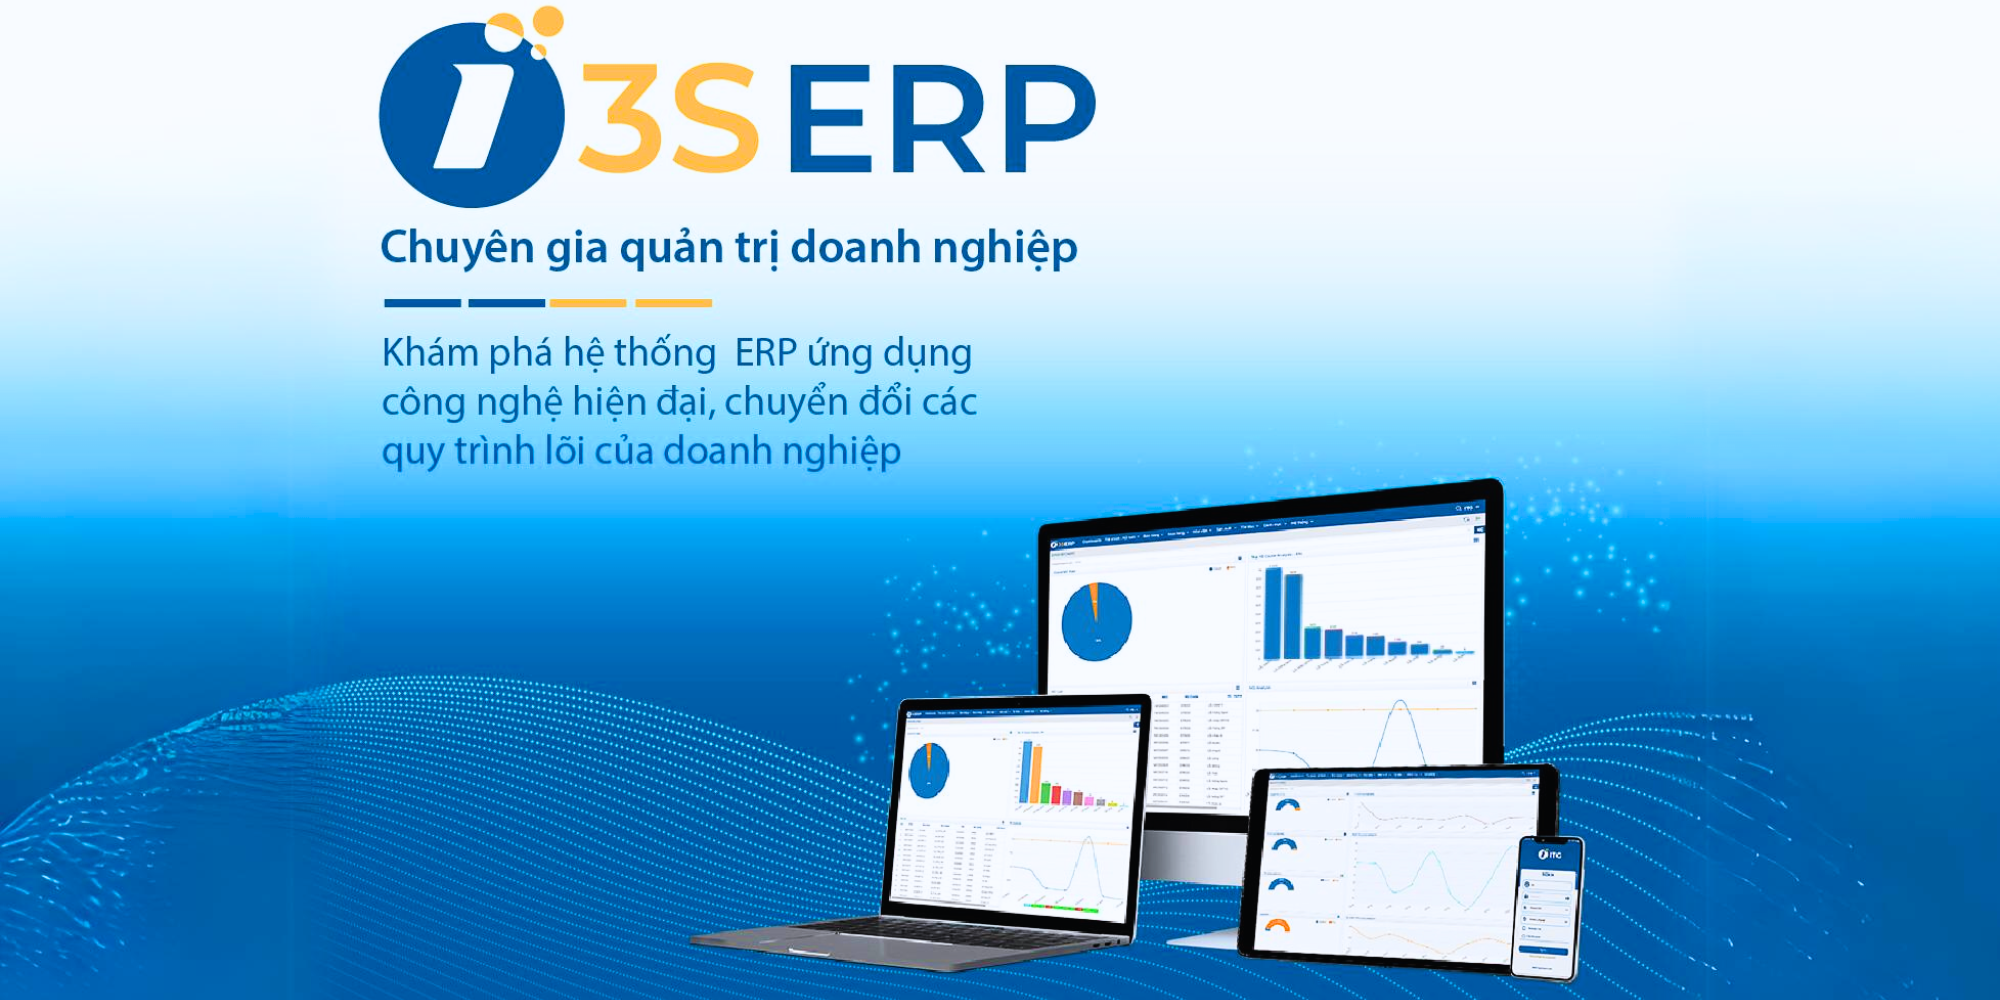 Phần mềm 3S ERP